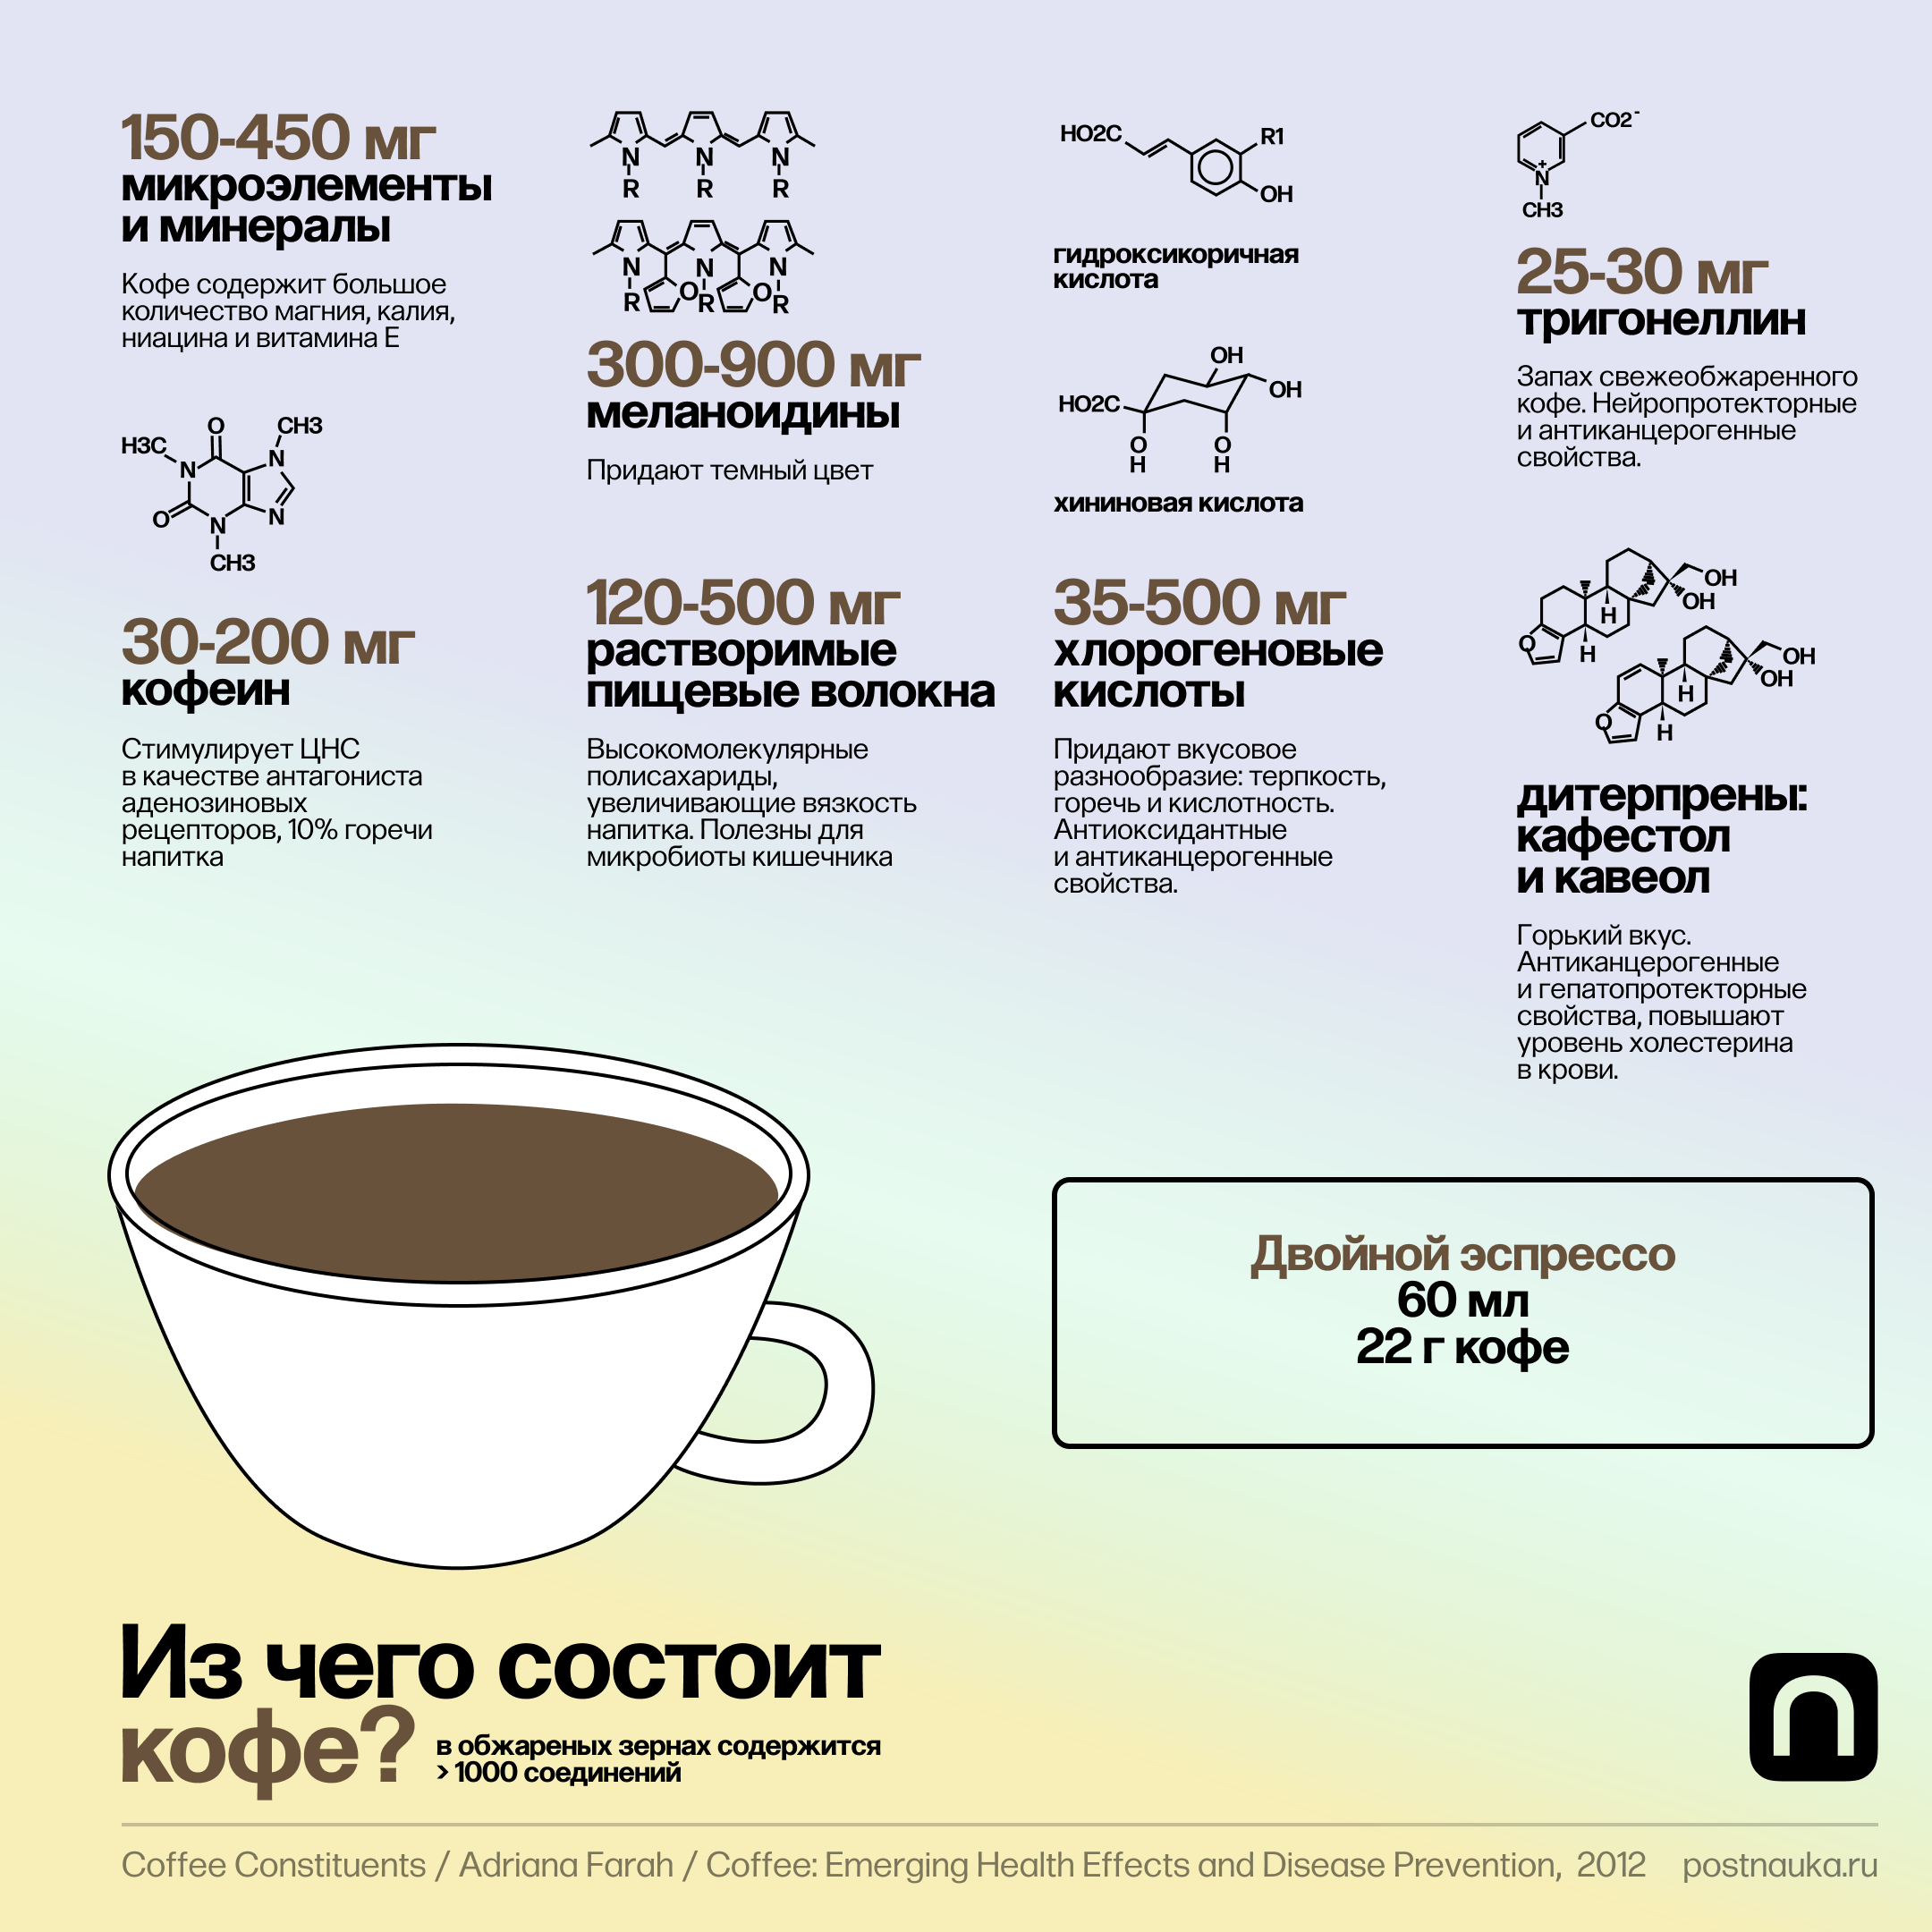 Разные типы кофе. Разнообразие видов кофе. Из чего состоит кофе. Разнообразие кофейных напитков. Расход кофе в кофемашине